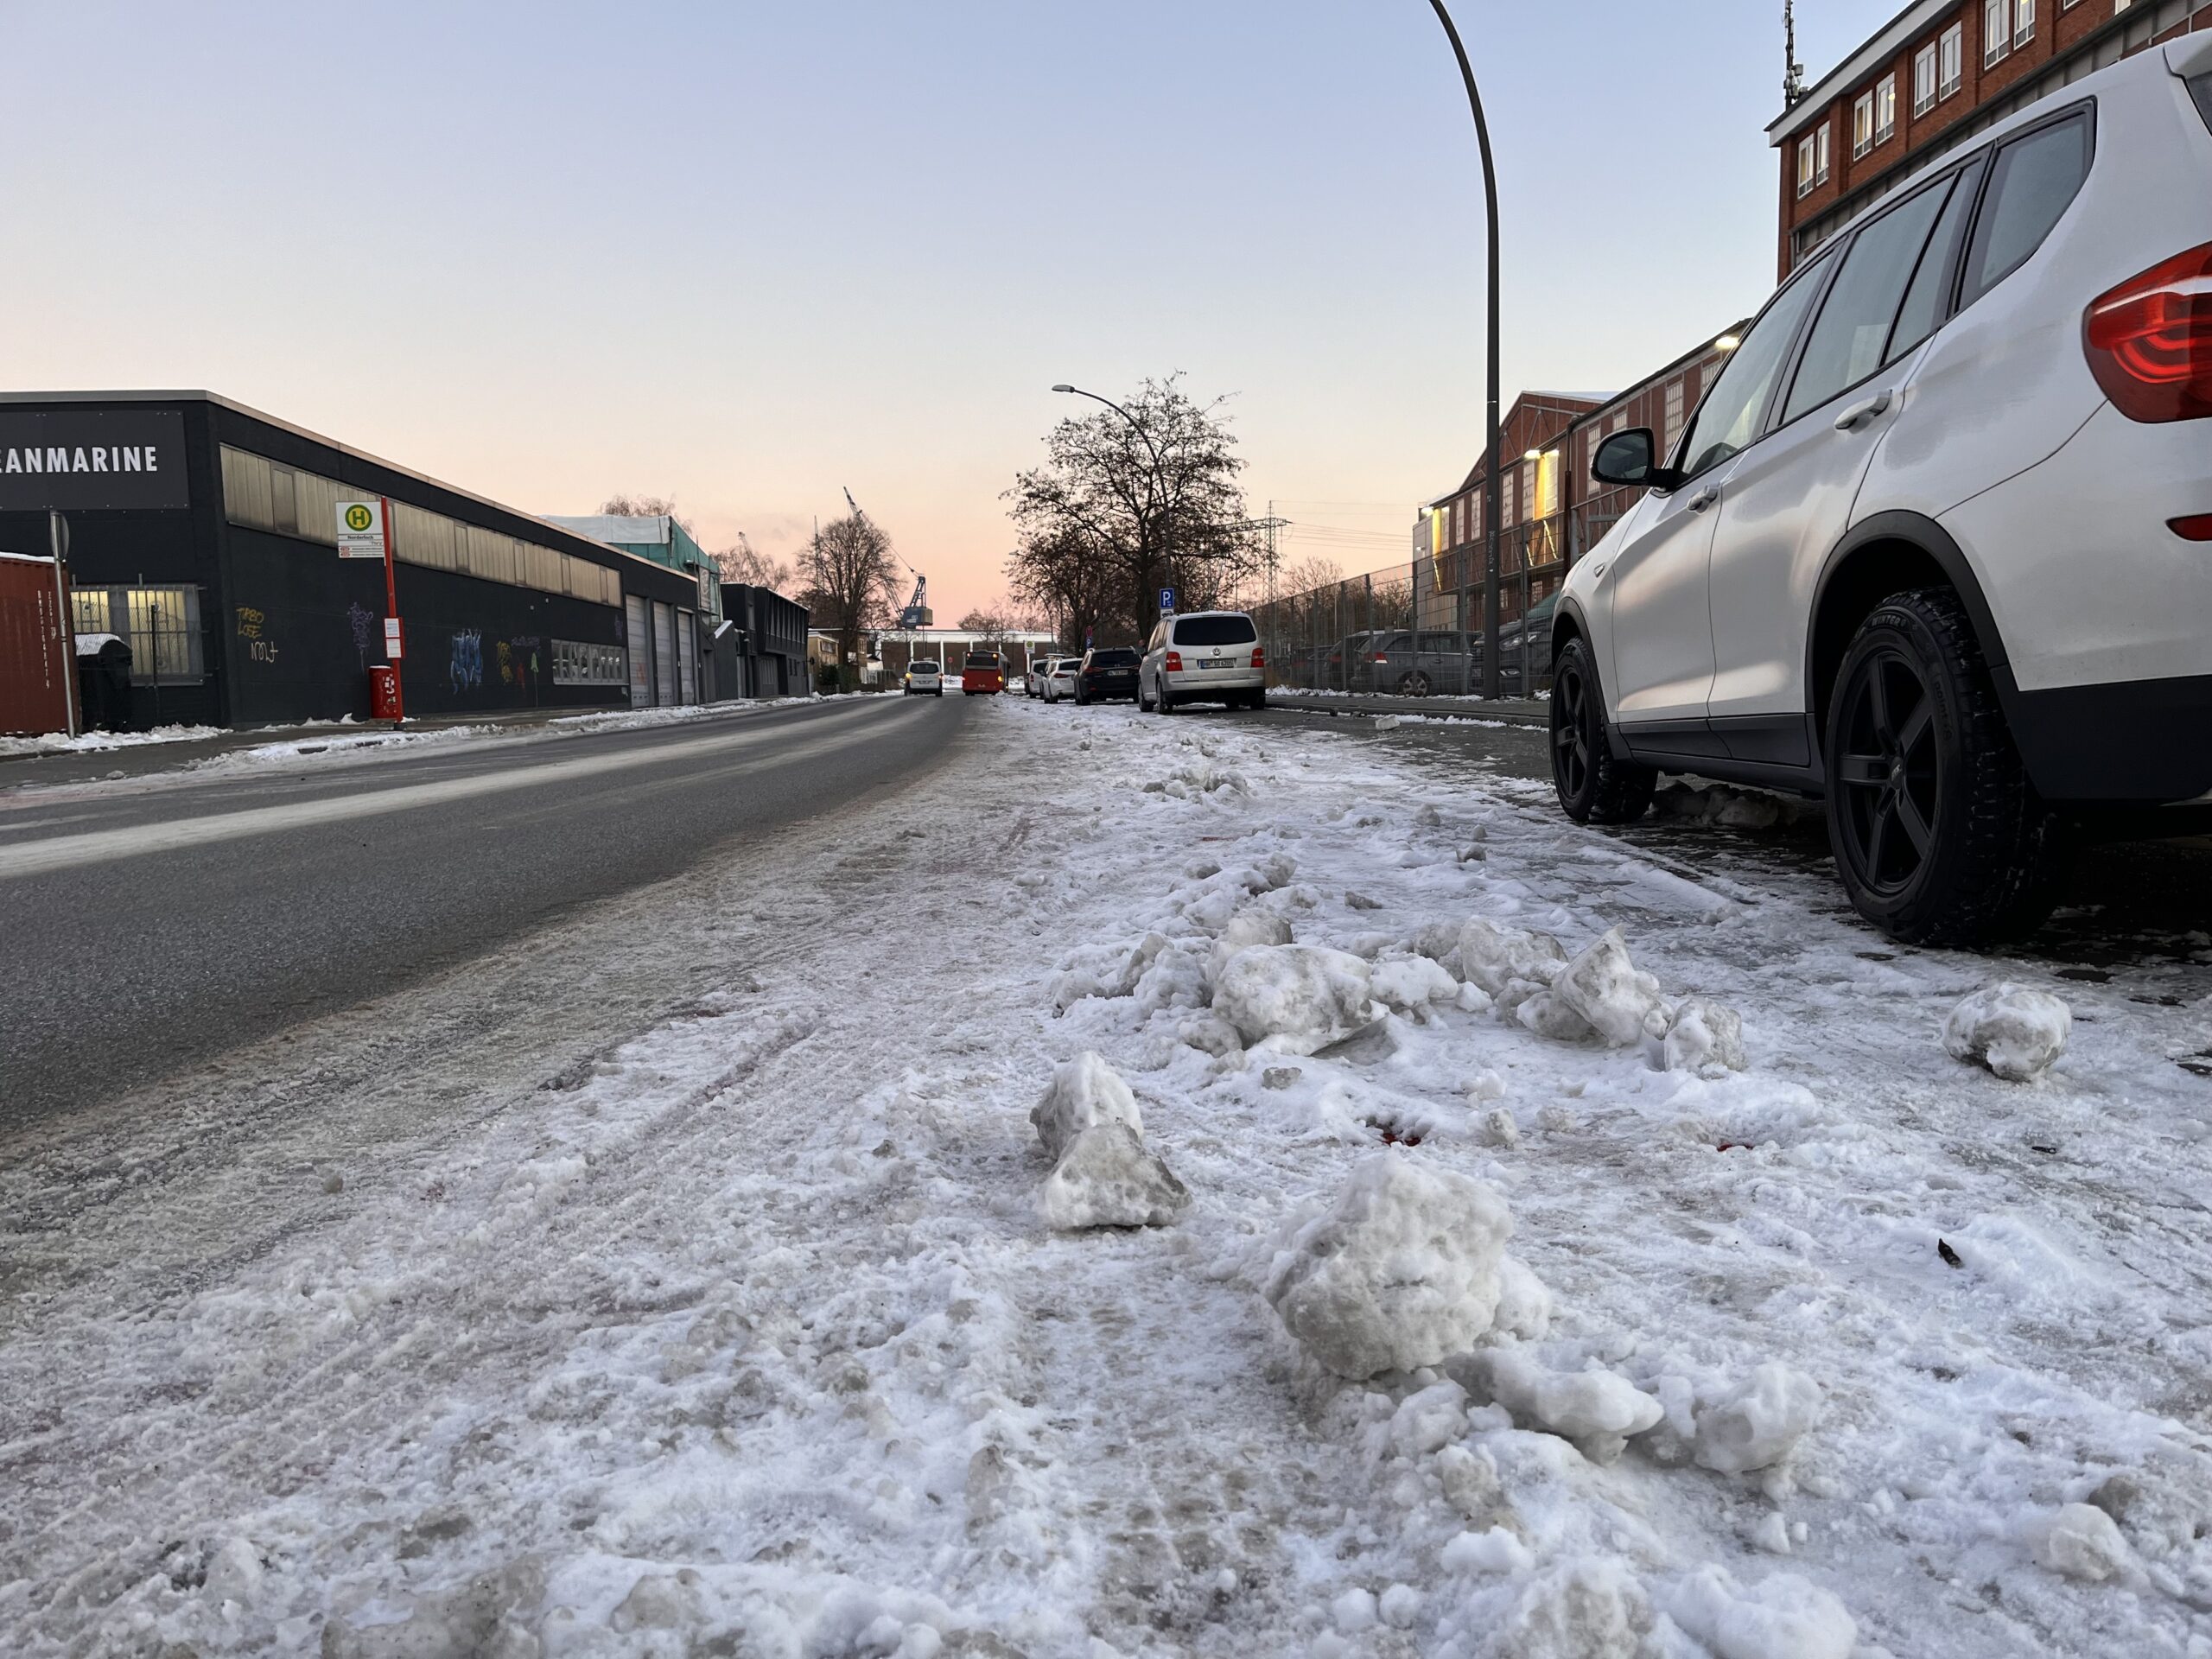 Während die Straße für die Autos freigeräumt wurde, ist der Radweg immer noch voller Eis und Schnee.